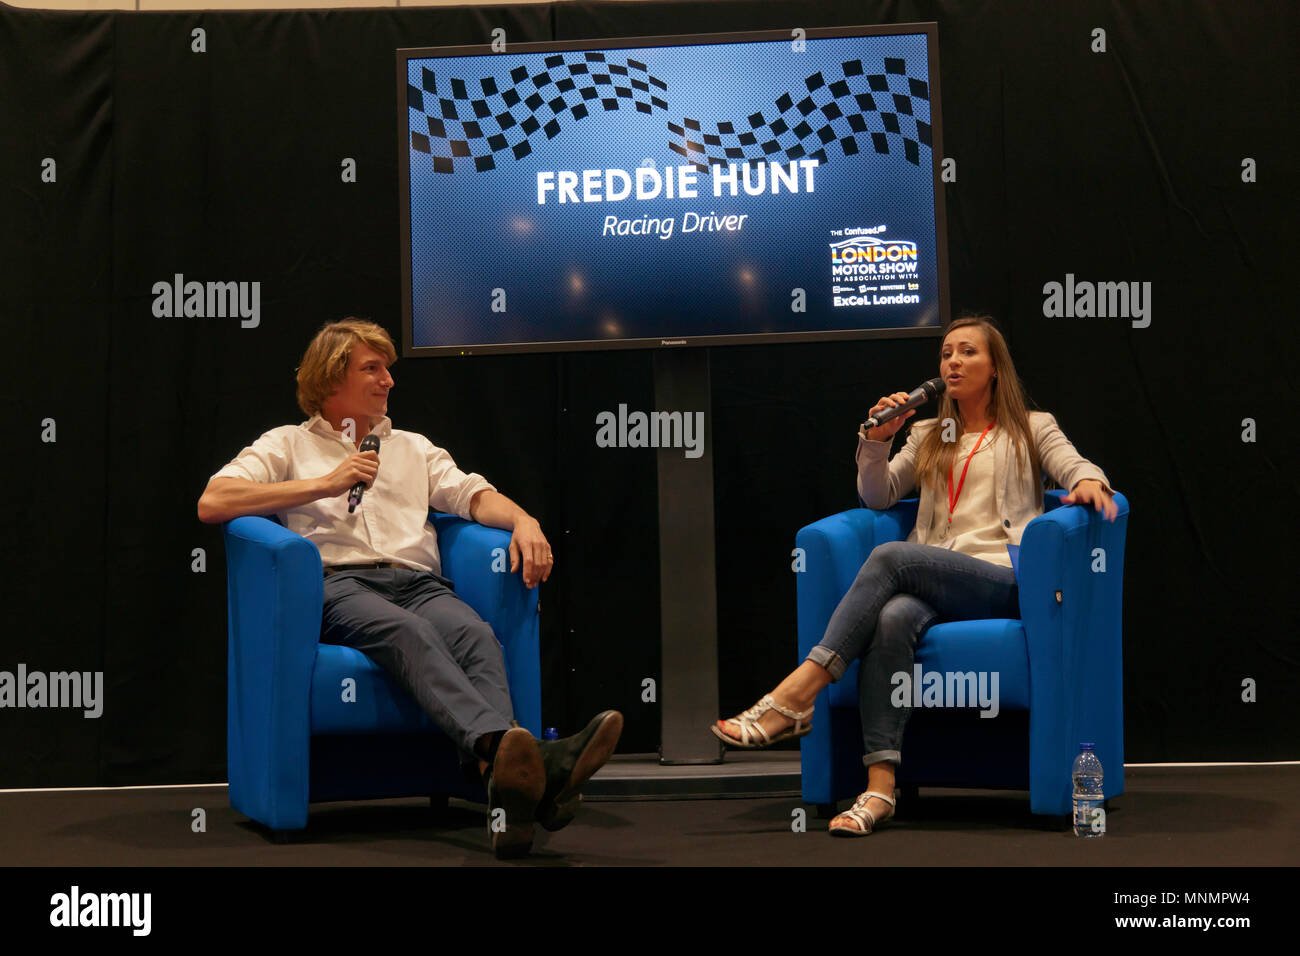 Pilote de course, Freddie Hunt dans une séance de questions et réponses avec Rebecca Jackson à la salle de conférence, au cours de la London Motor Show 2018. Banque D'Images